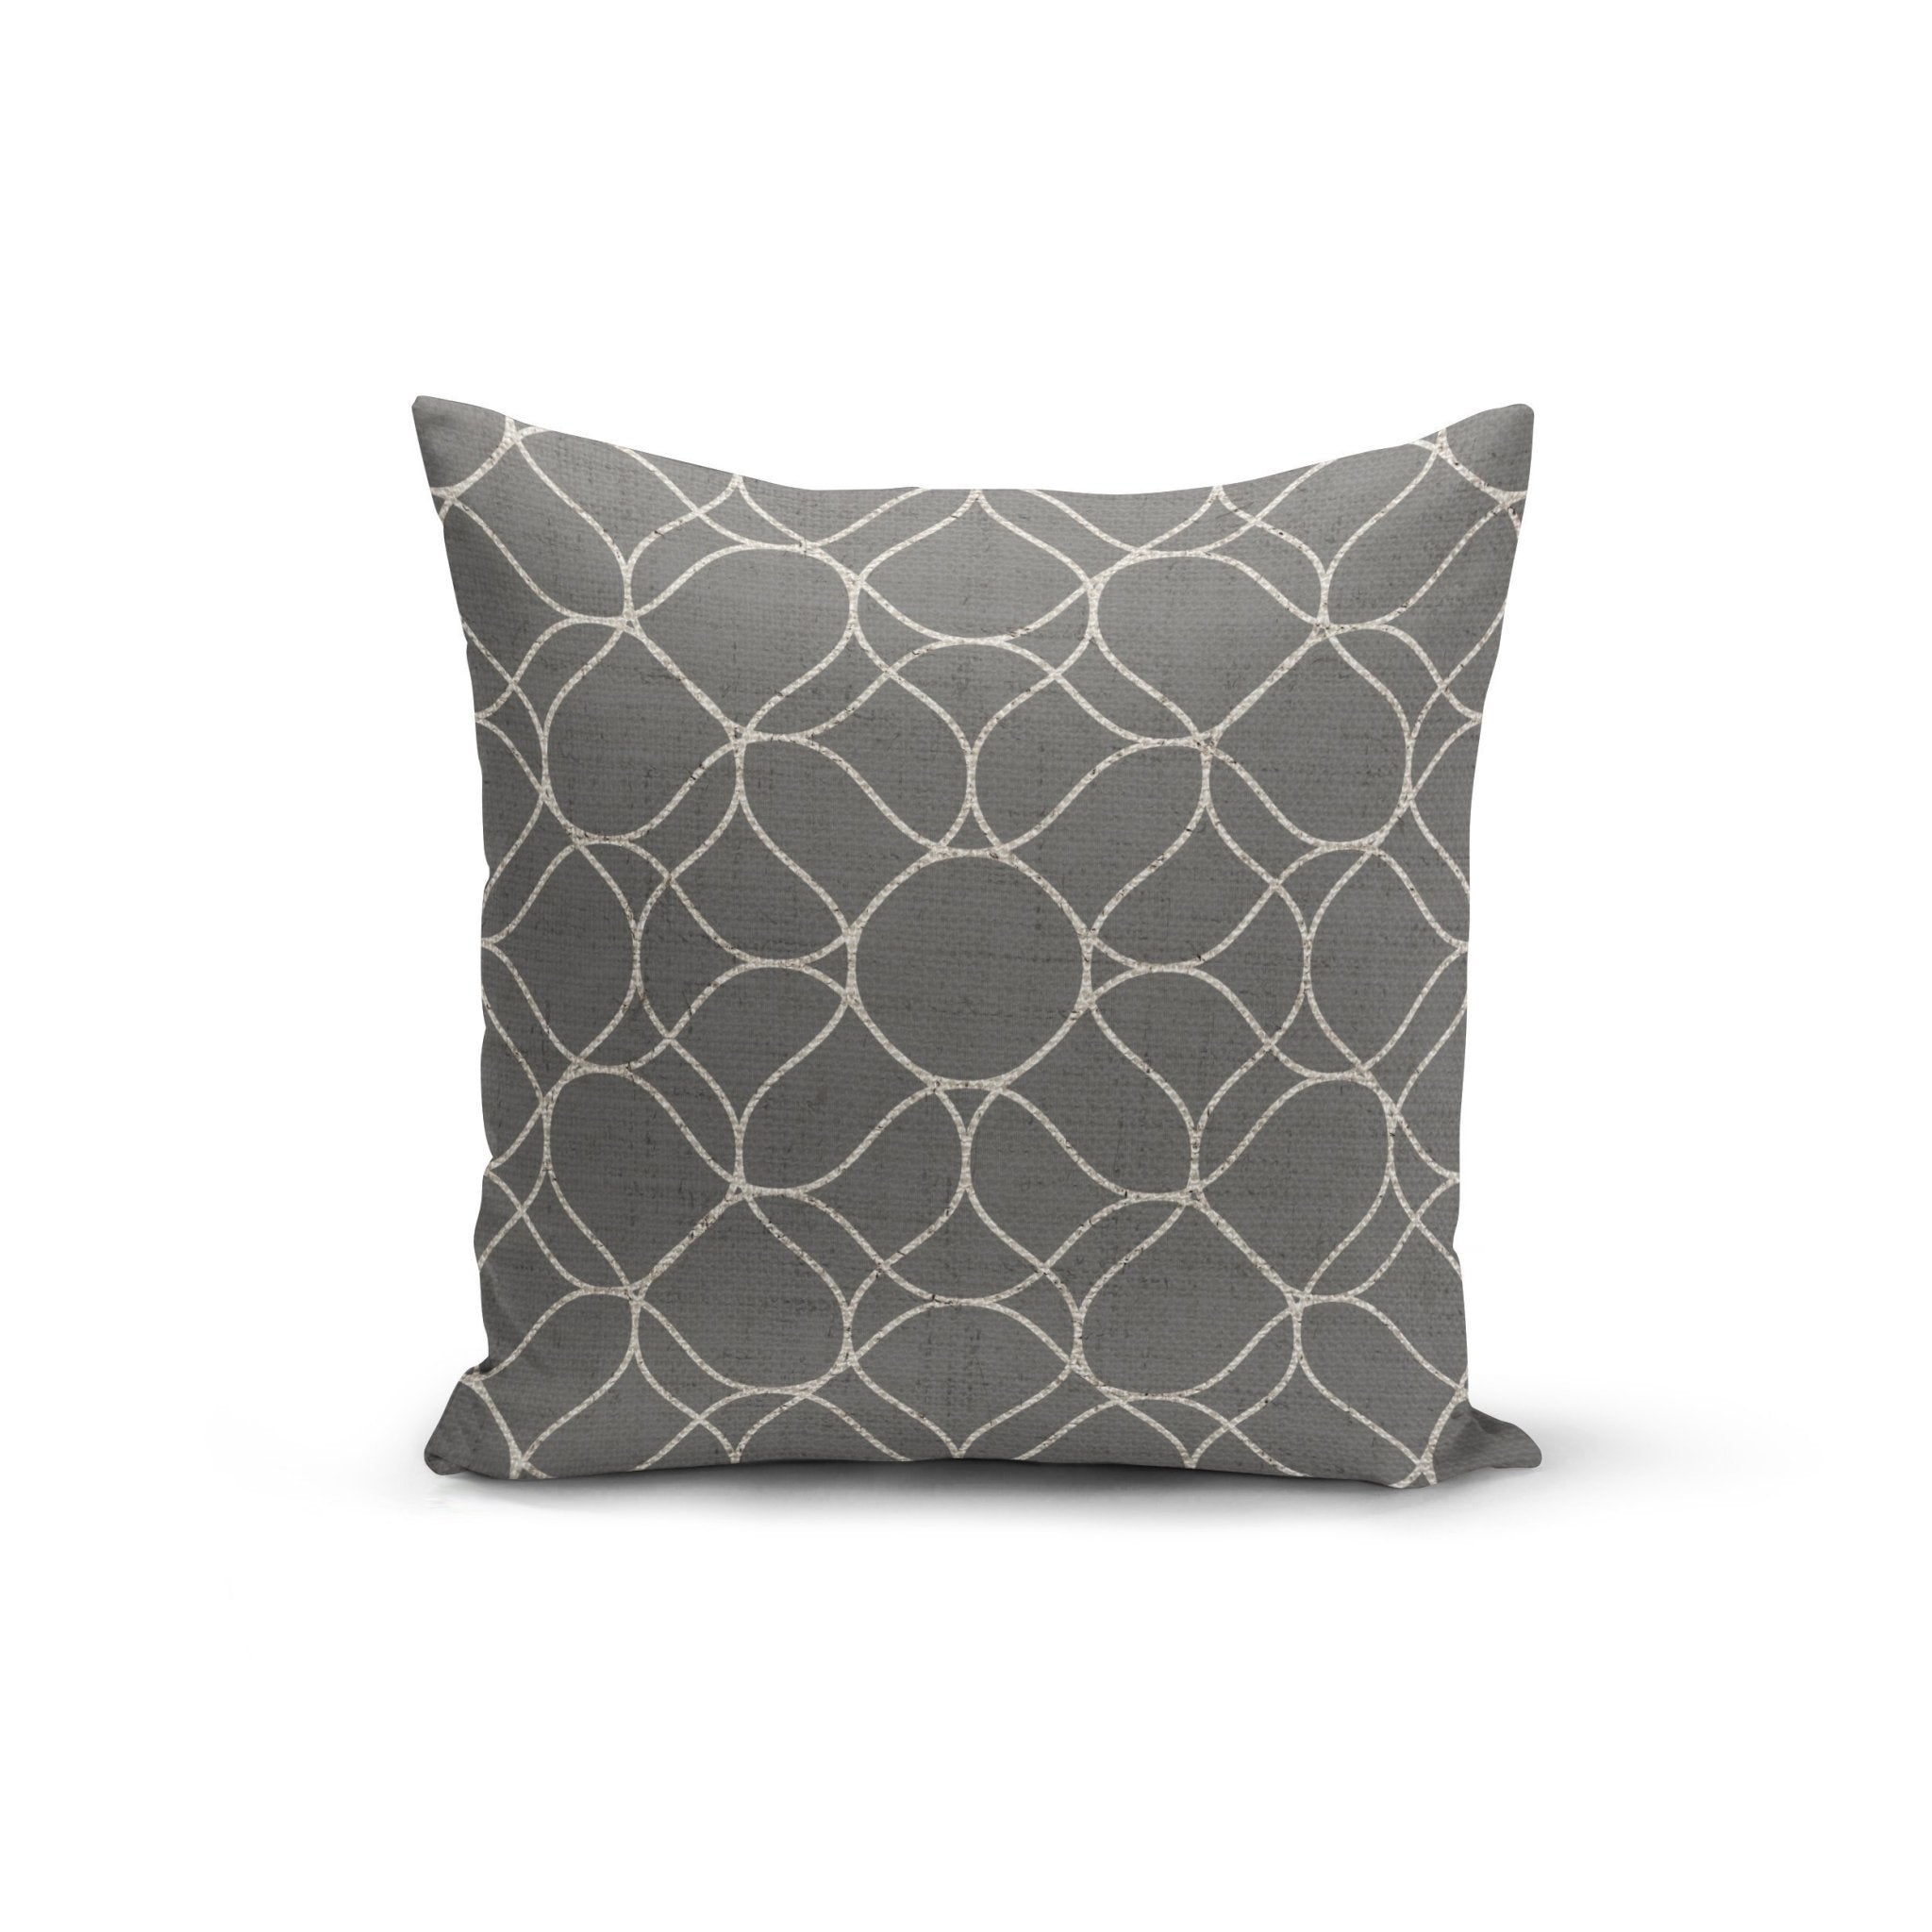 Grey Trellis Pillow Cover - Mahogany Home EssentialsPillow Covers